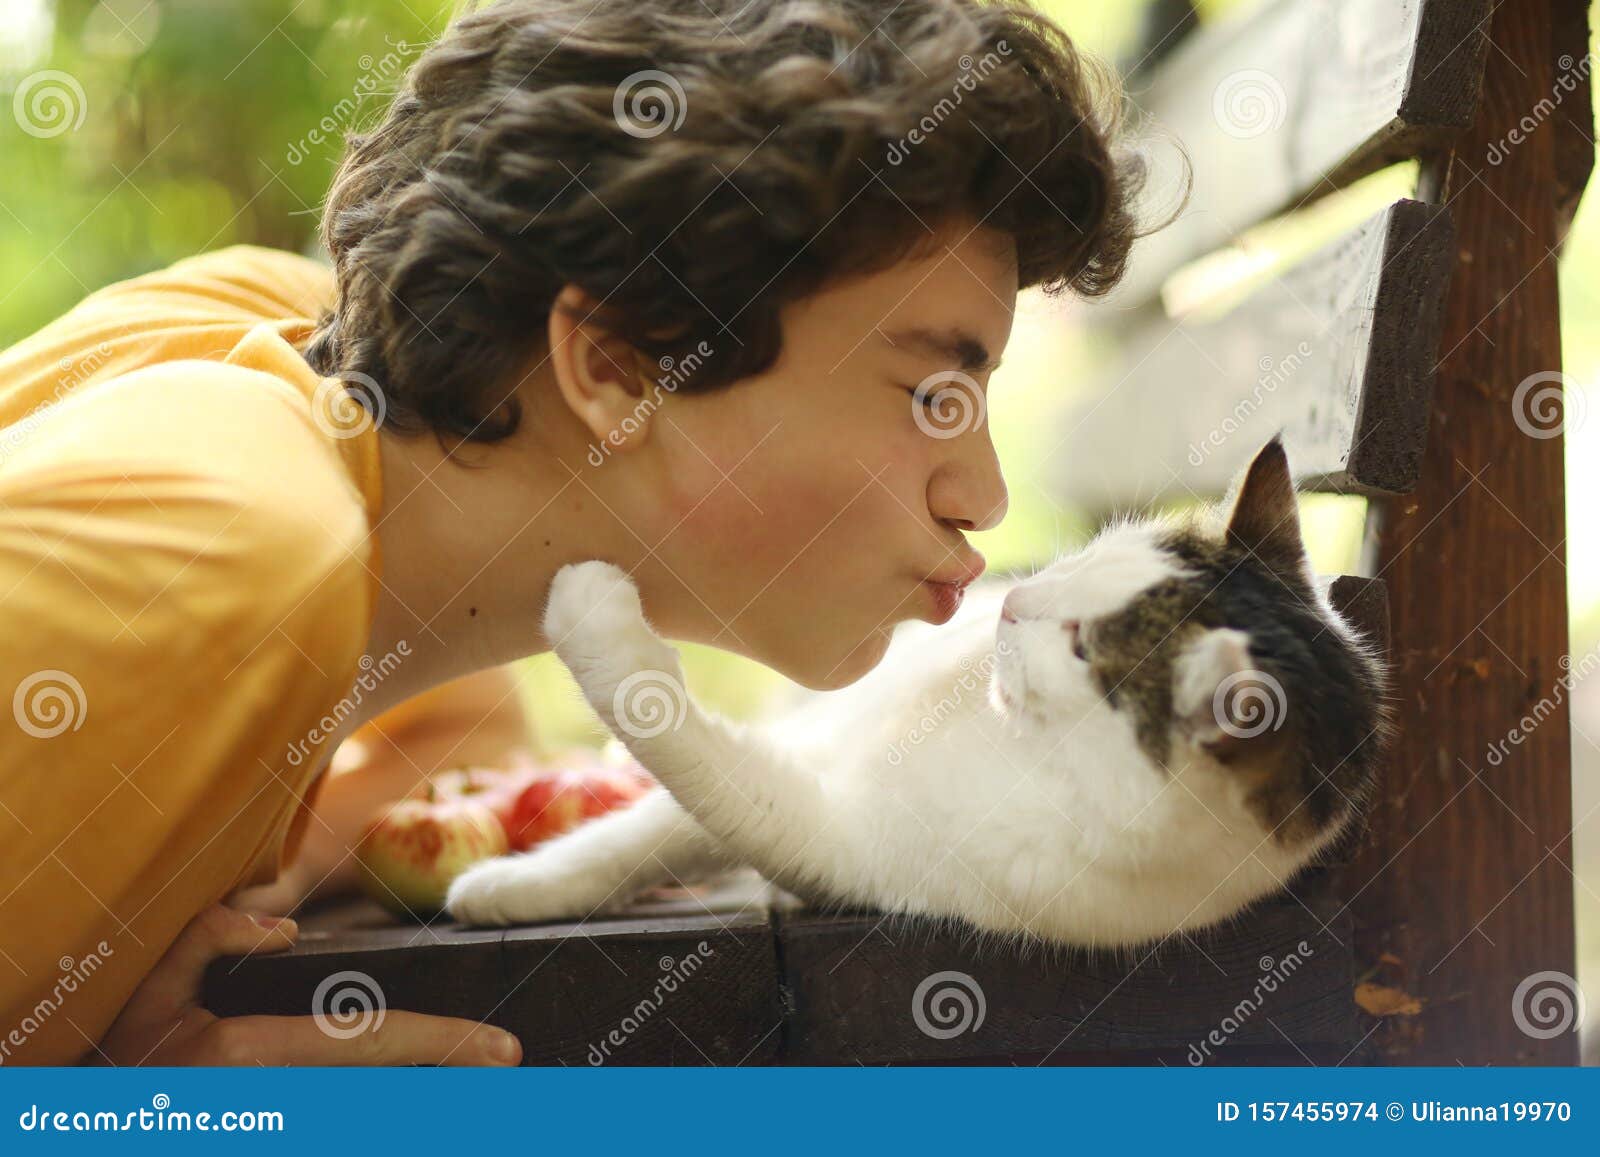 男生抱猫头像 - 堆糖，美图壁纸兴趣社区